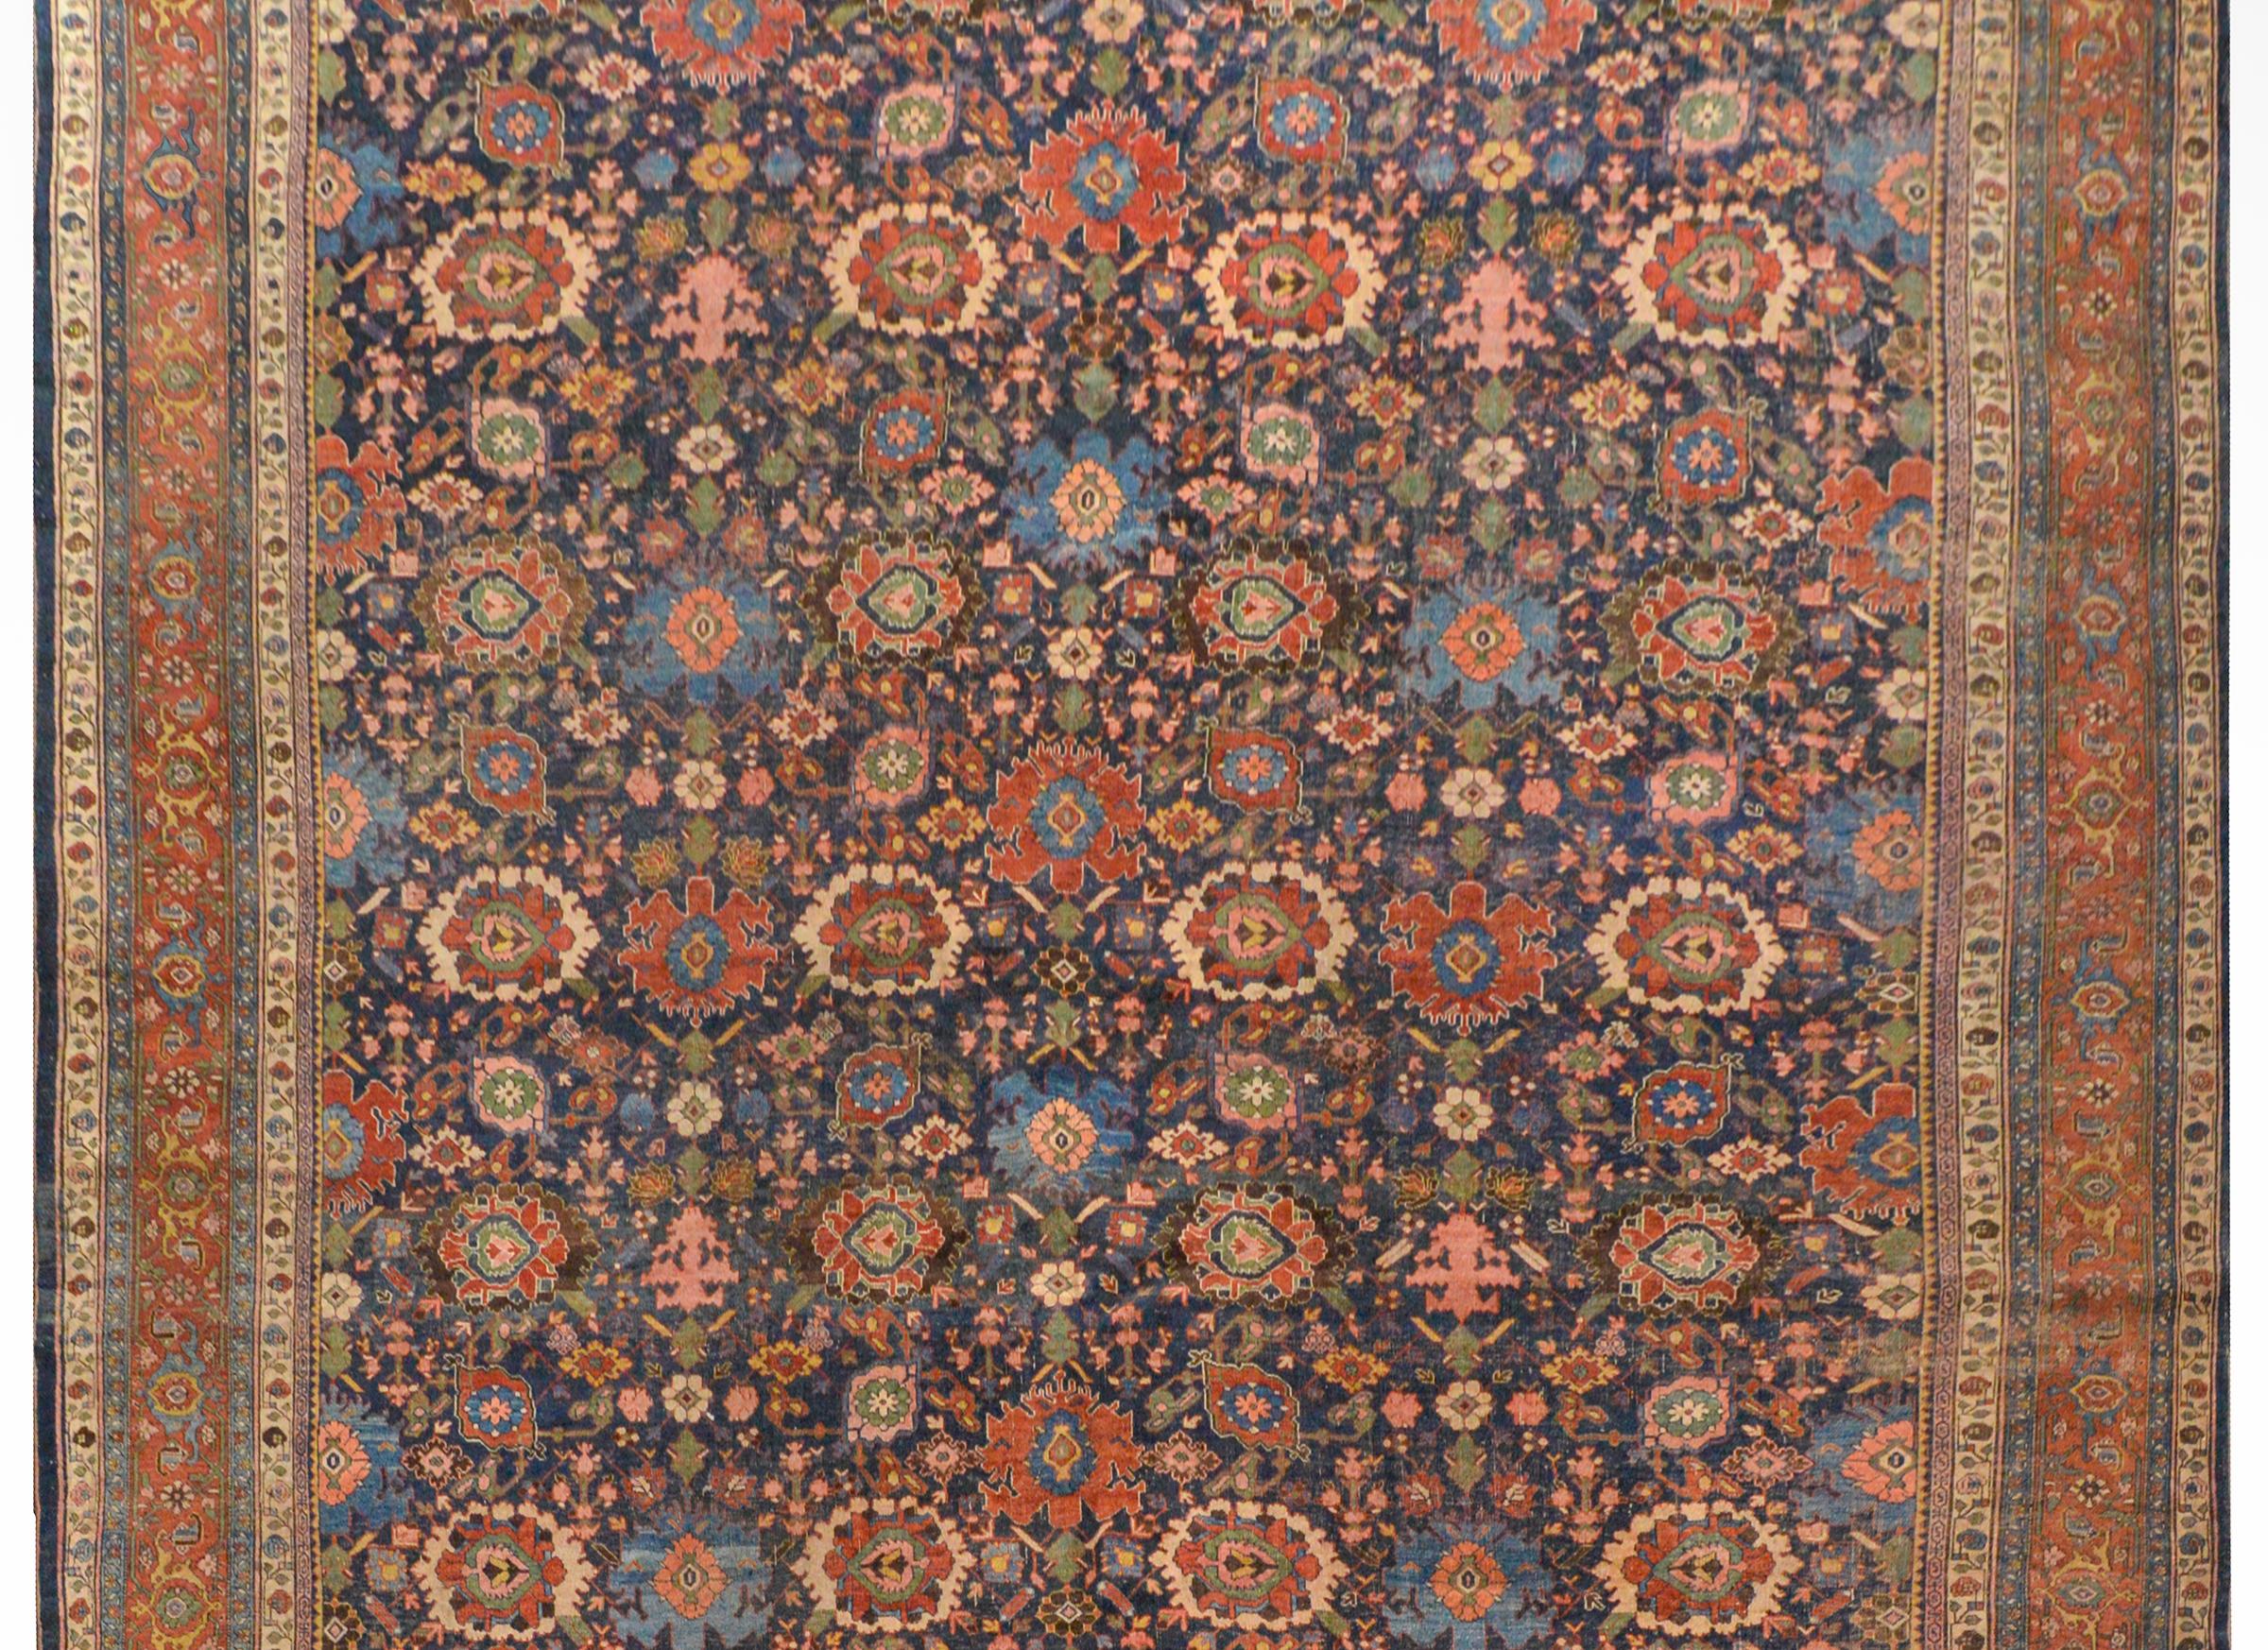 Incroyable tapis persan Bidjar de la fin du XIXe siècle, à l'échelle d'un palais, avec un fantastique motif floral à grande échelle tissé en cramoisi, indigo, or, vert, brun et rose, le tout sur un fond indigo foncé. La bordure est complexe avec une